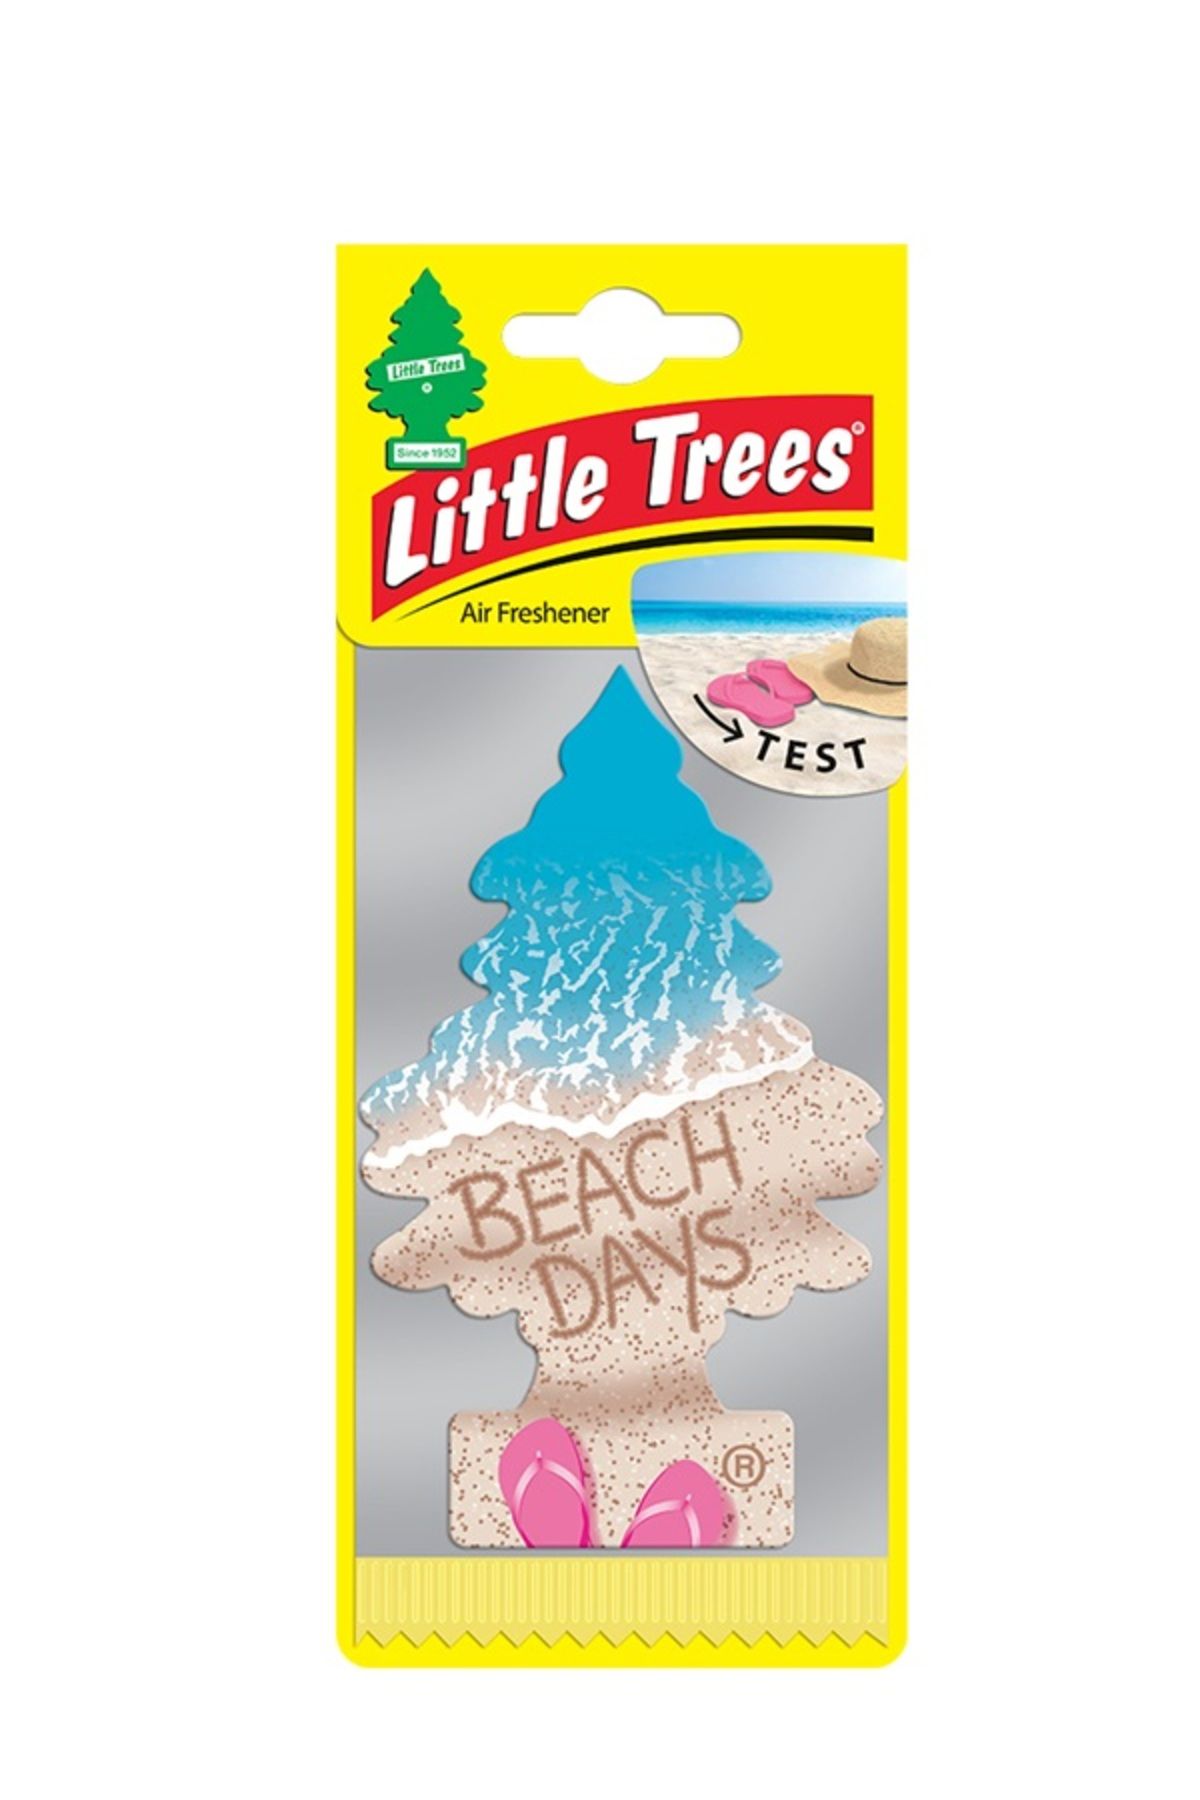 Little Trees Beach Days Araba Kokusu